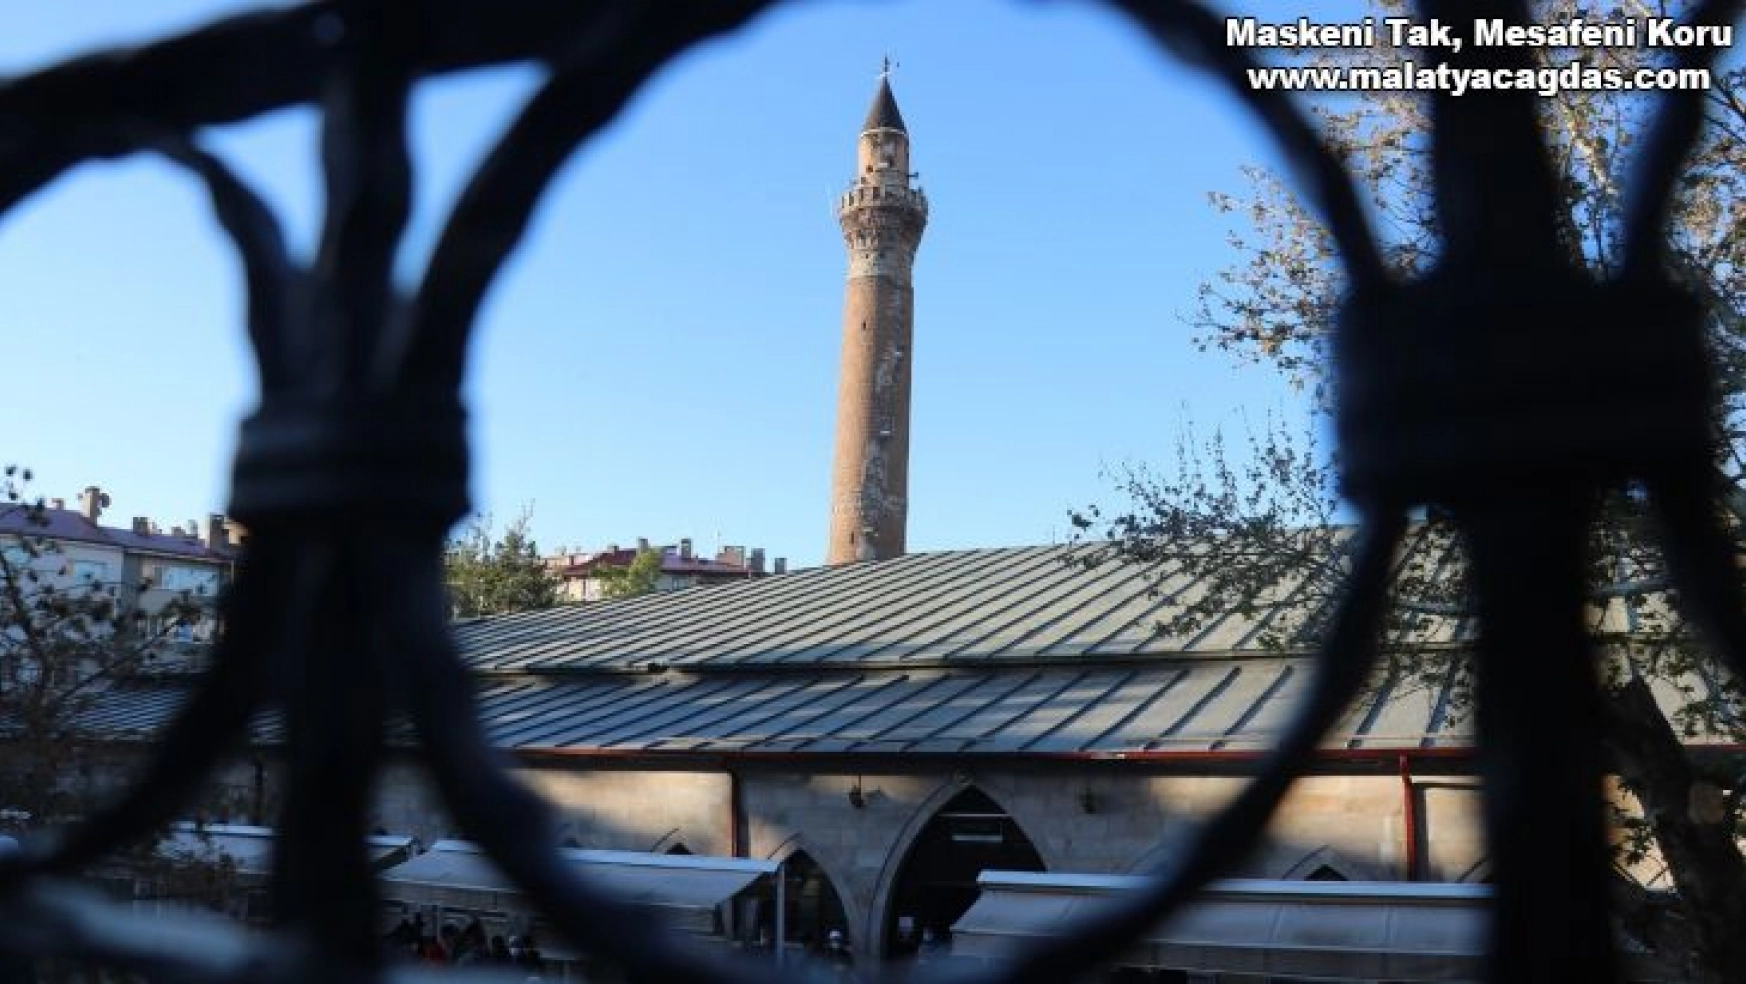 825 yıllık Ulu Camii'nde bayram namazı